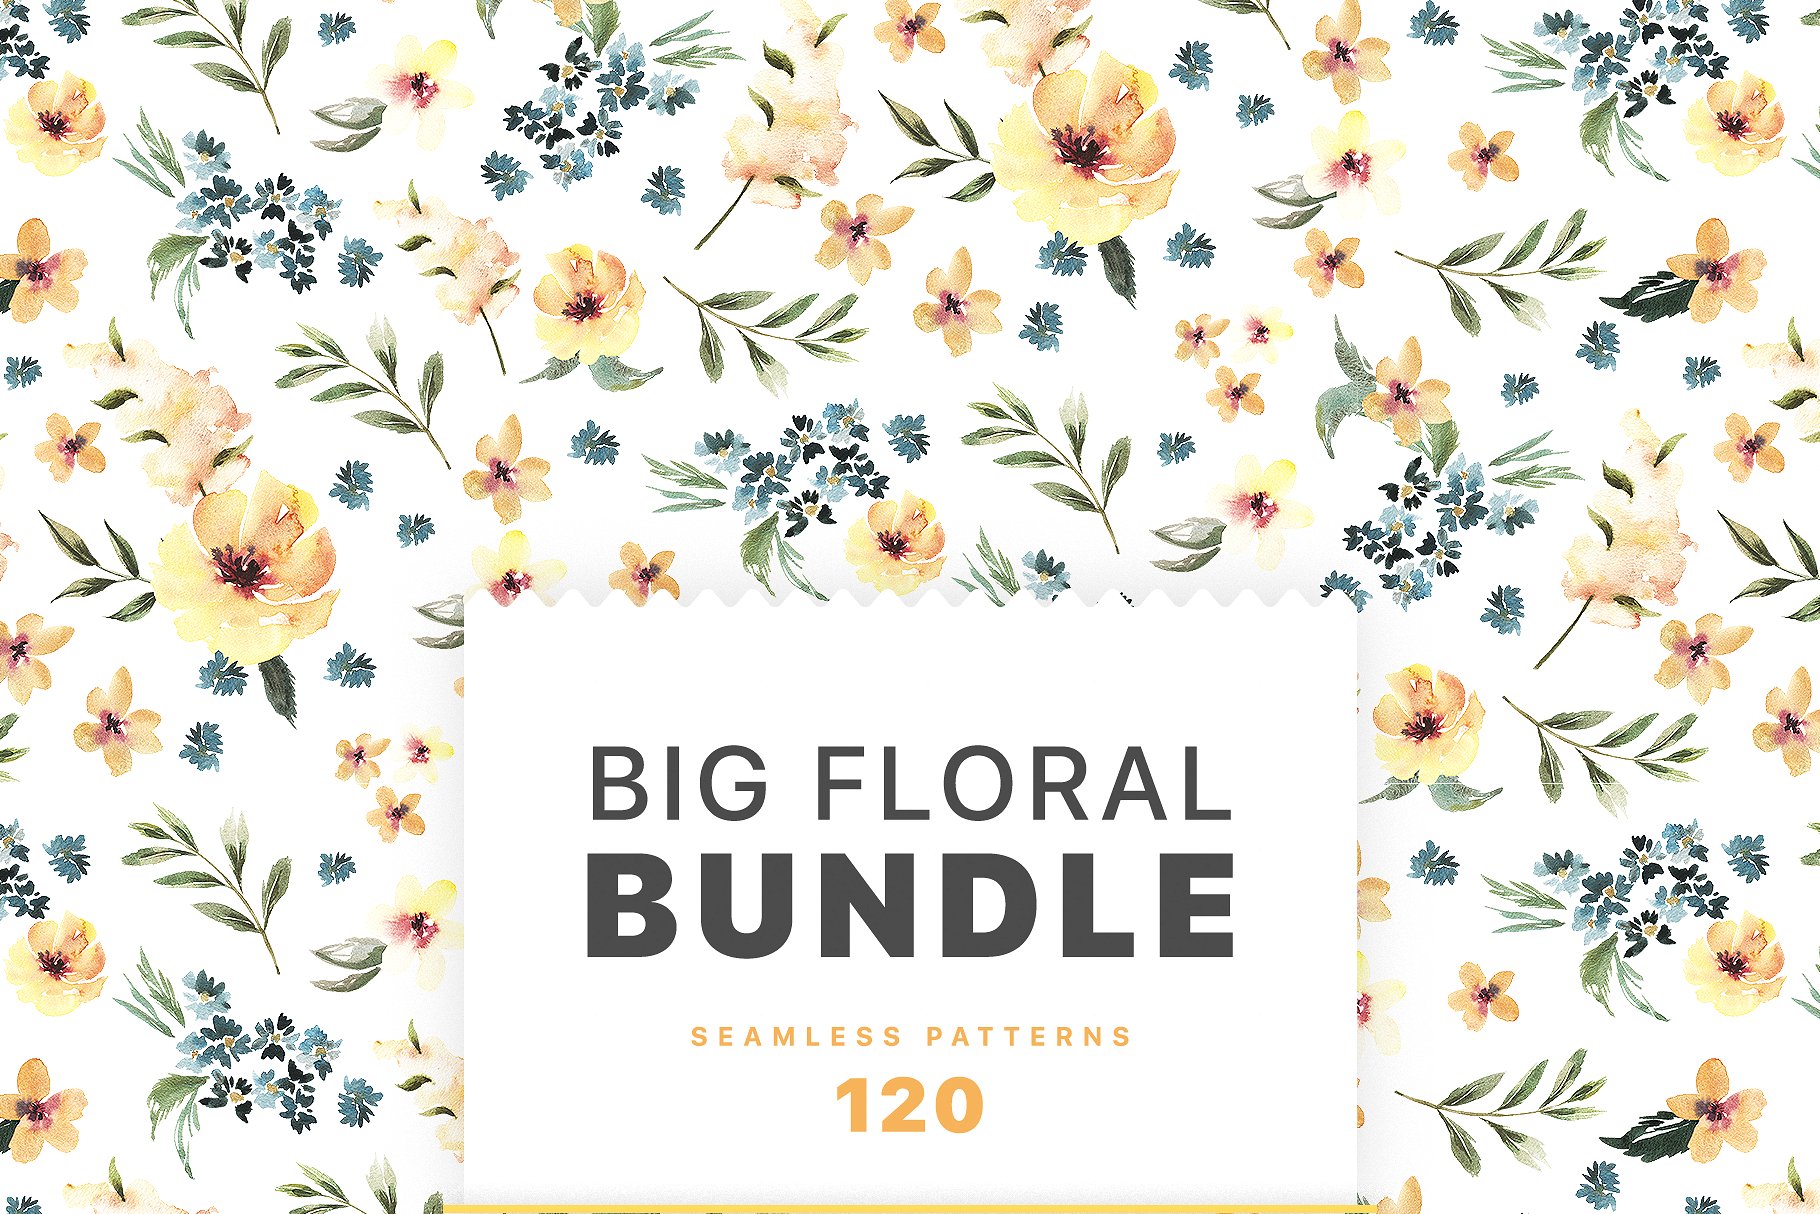 极力推荐：花卉图案纹理集合 Floral Patterns Bundle Vol.2 [3.45GB, 超过120款图案]插图(1)